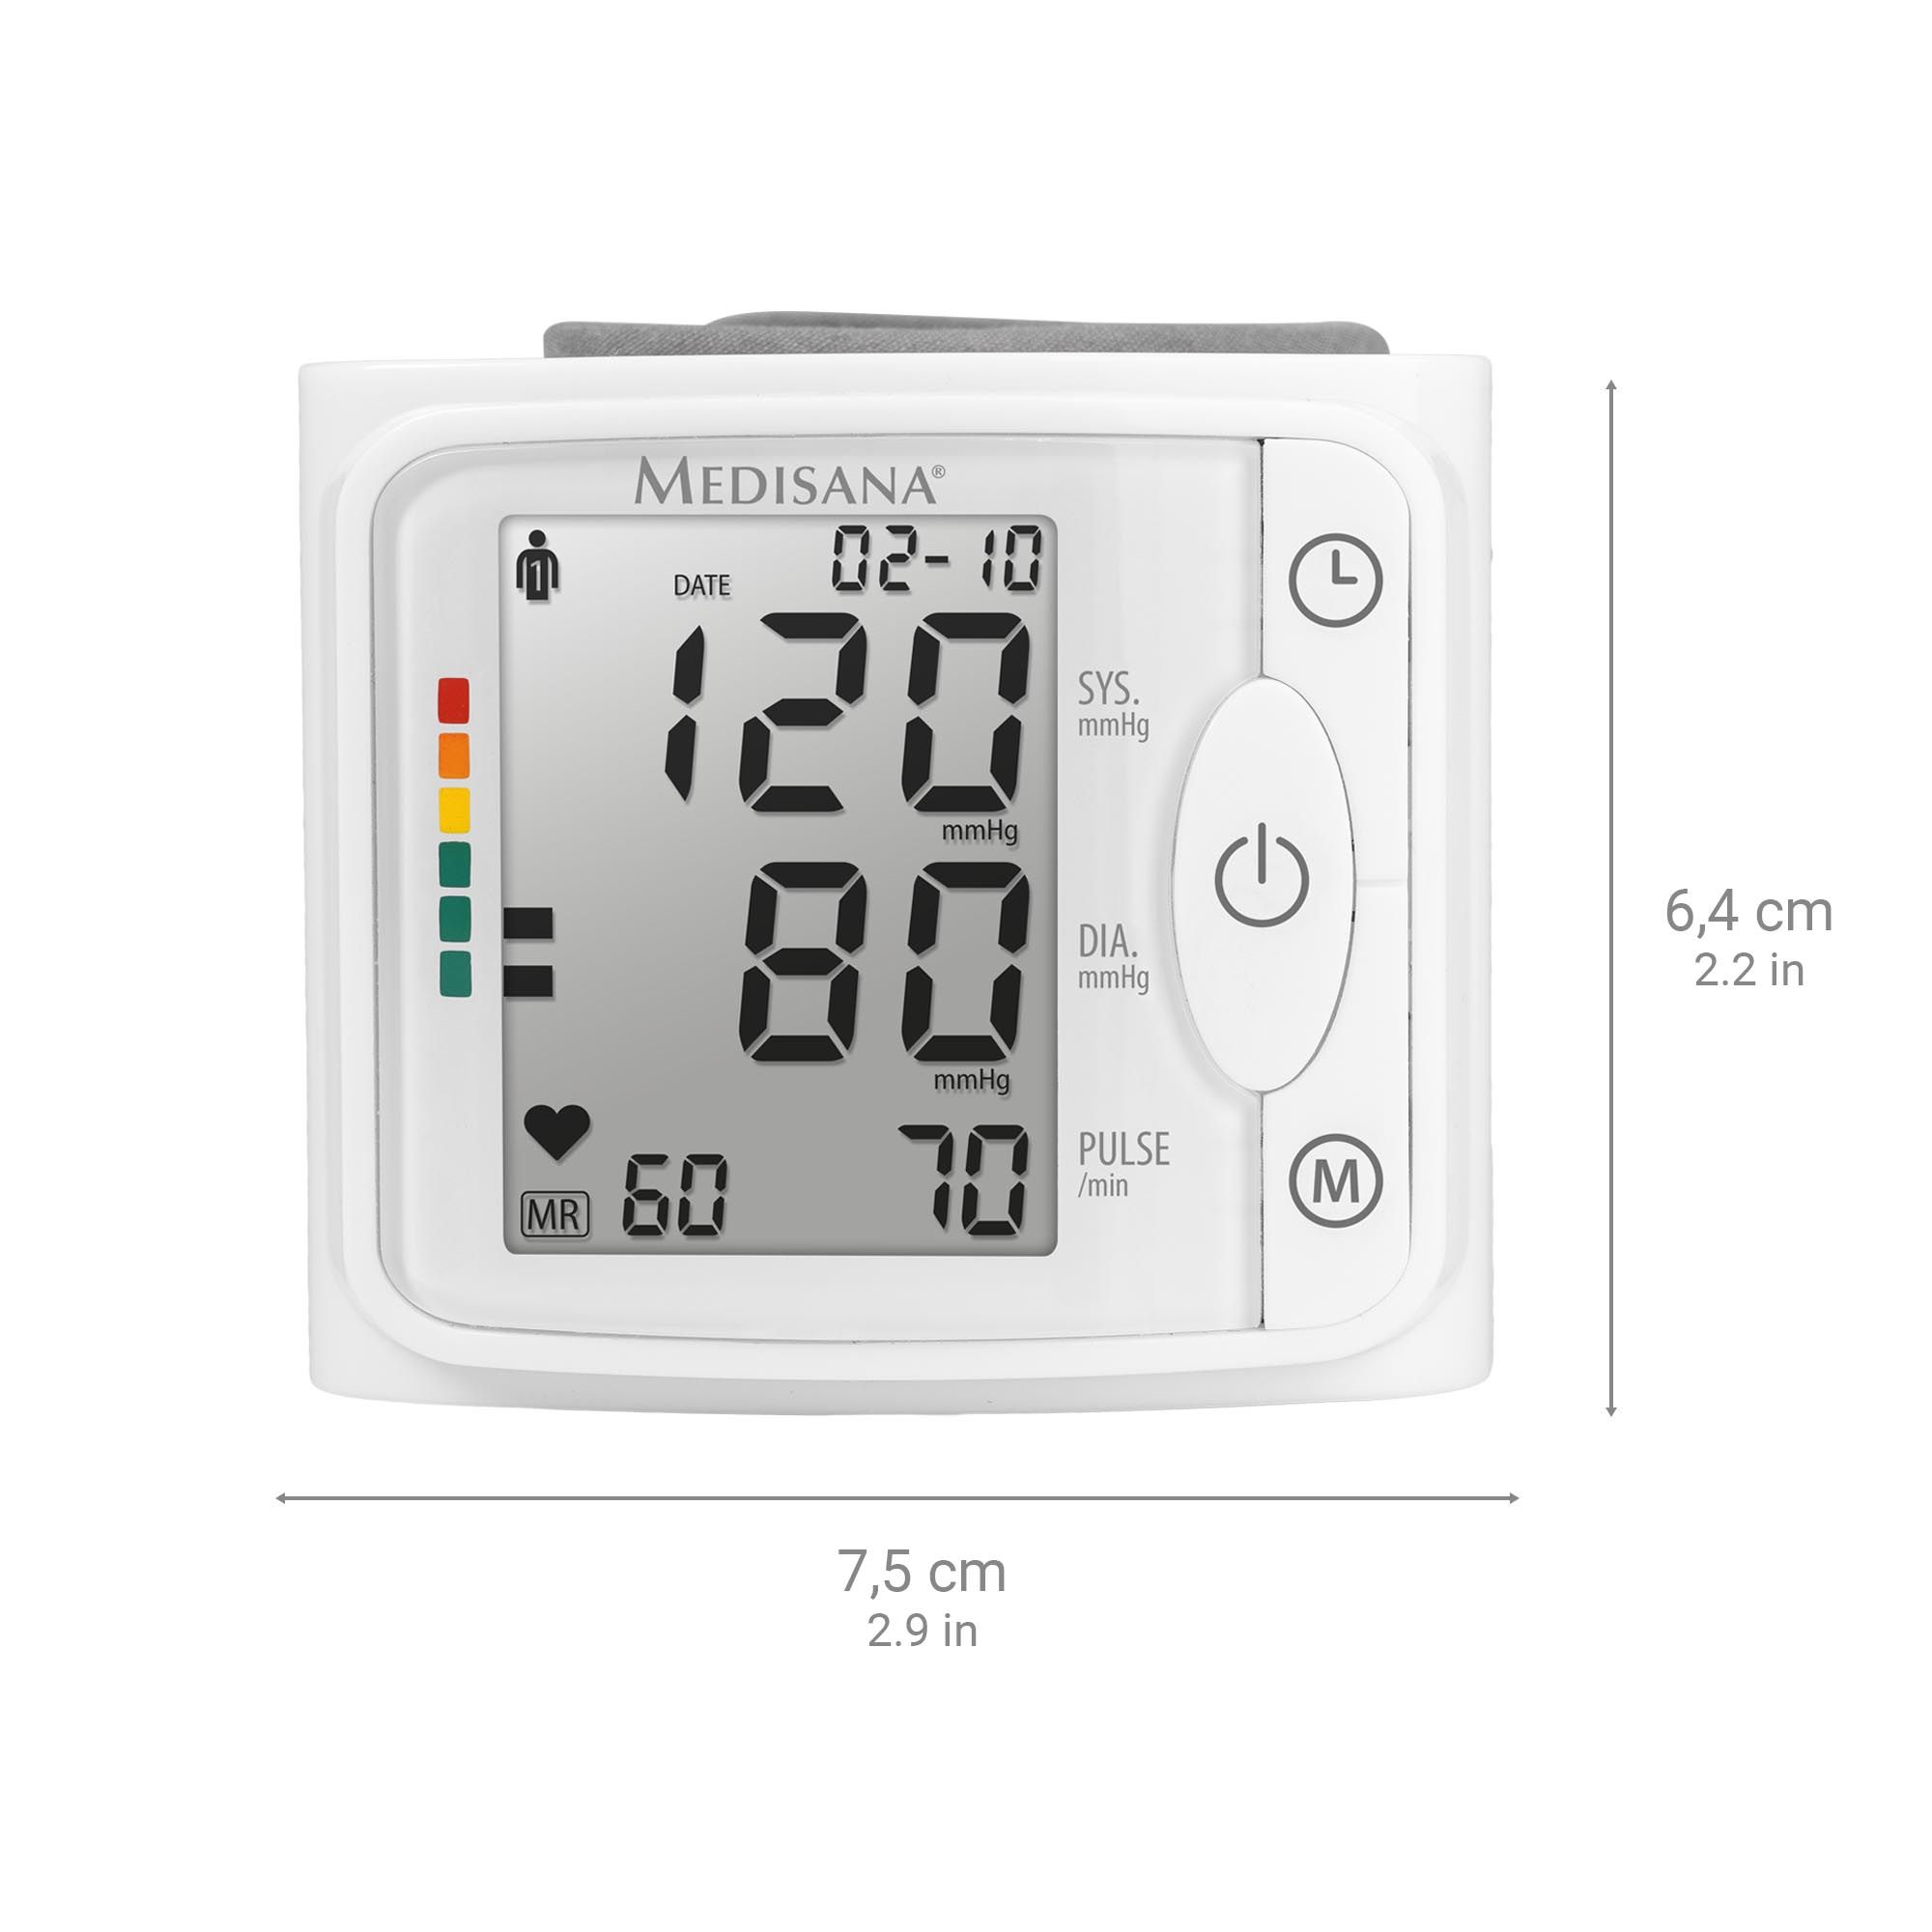 medisana BW 320 Handgelenk-Blutdruckmessgerät | Blutdruckmessung | Pulsmessung | Speicherfunktion